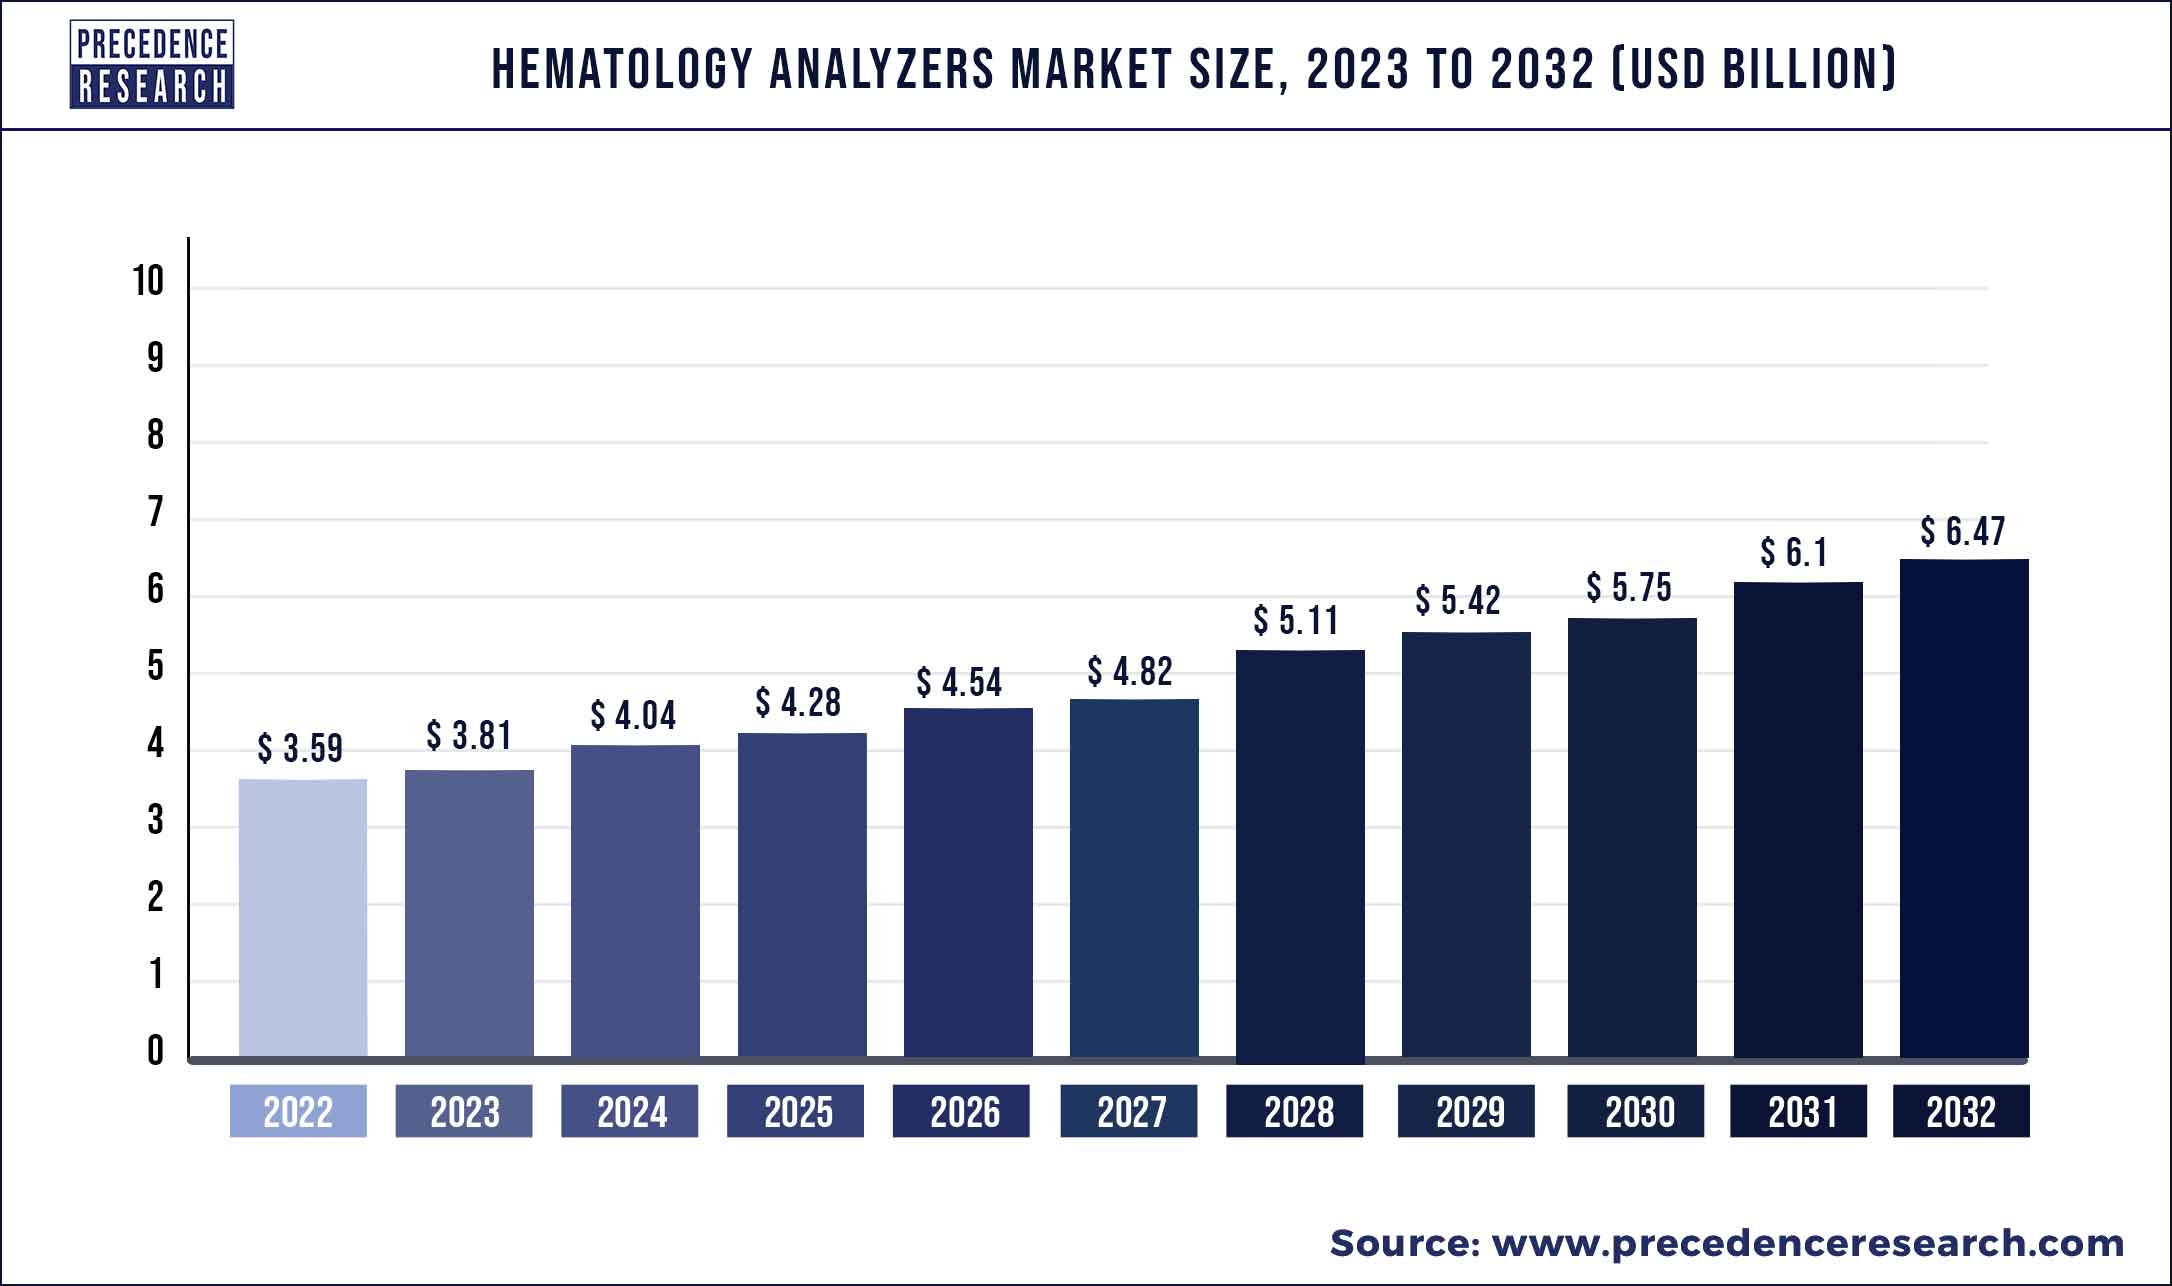 Hematology Analyzers Market Size 2023 To 2032